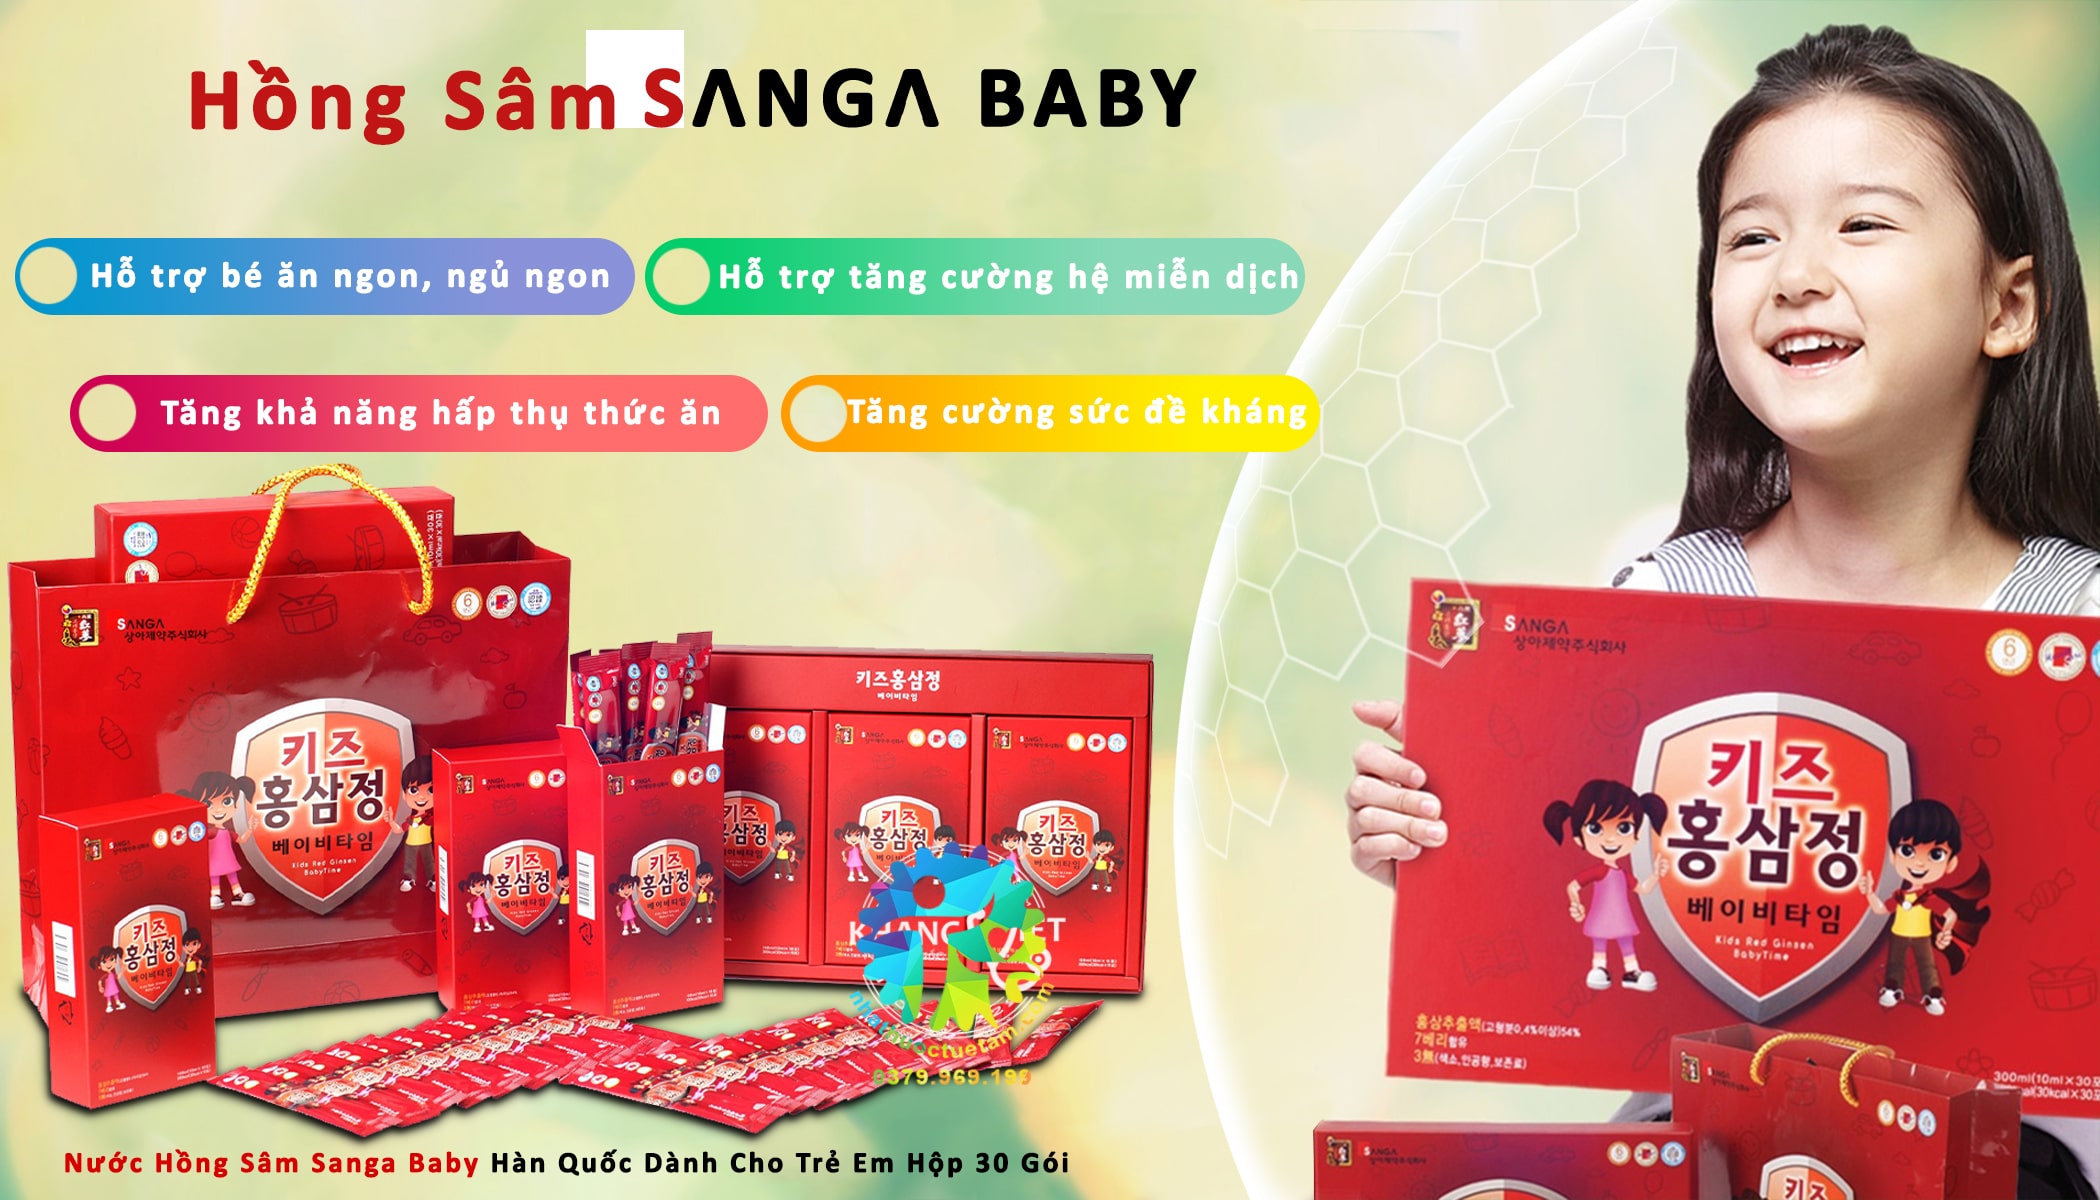 Nước Hồng Sâm Sanga Hàn Quốc dành cho trẻ em hộp 30 gói